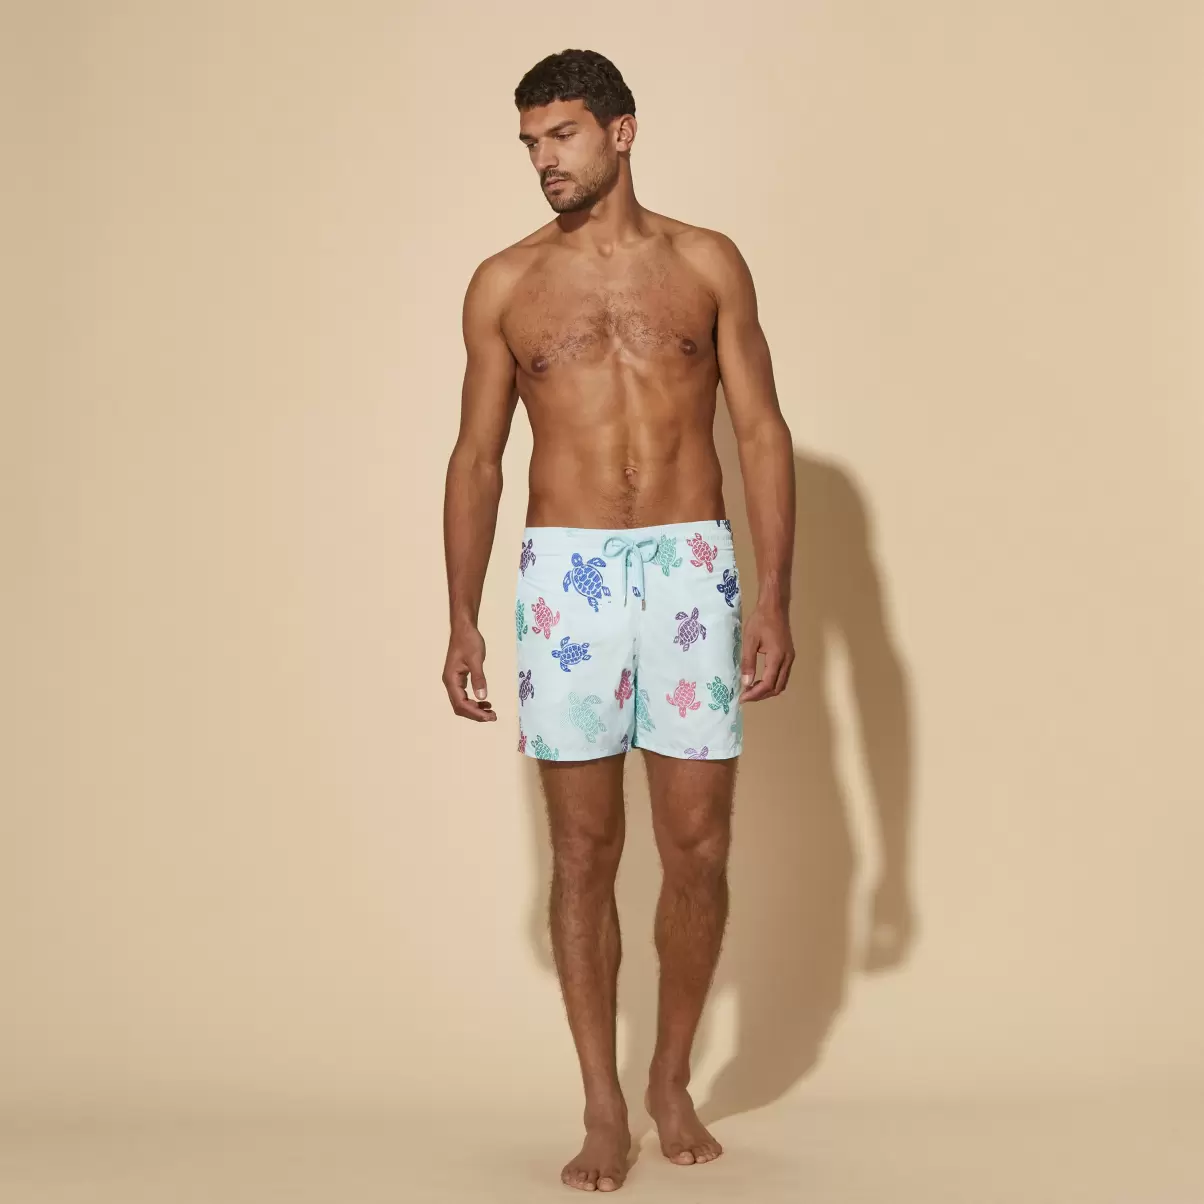 Men Swim Shorts Embroidered Tortue Multicolore - Limited Edition Thalassa / Azul Vilebrequin Económico El Bordado Hombre